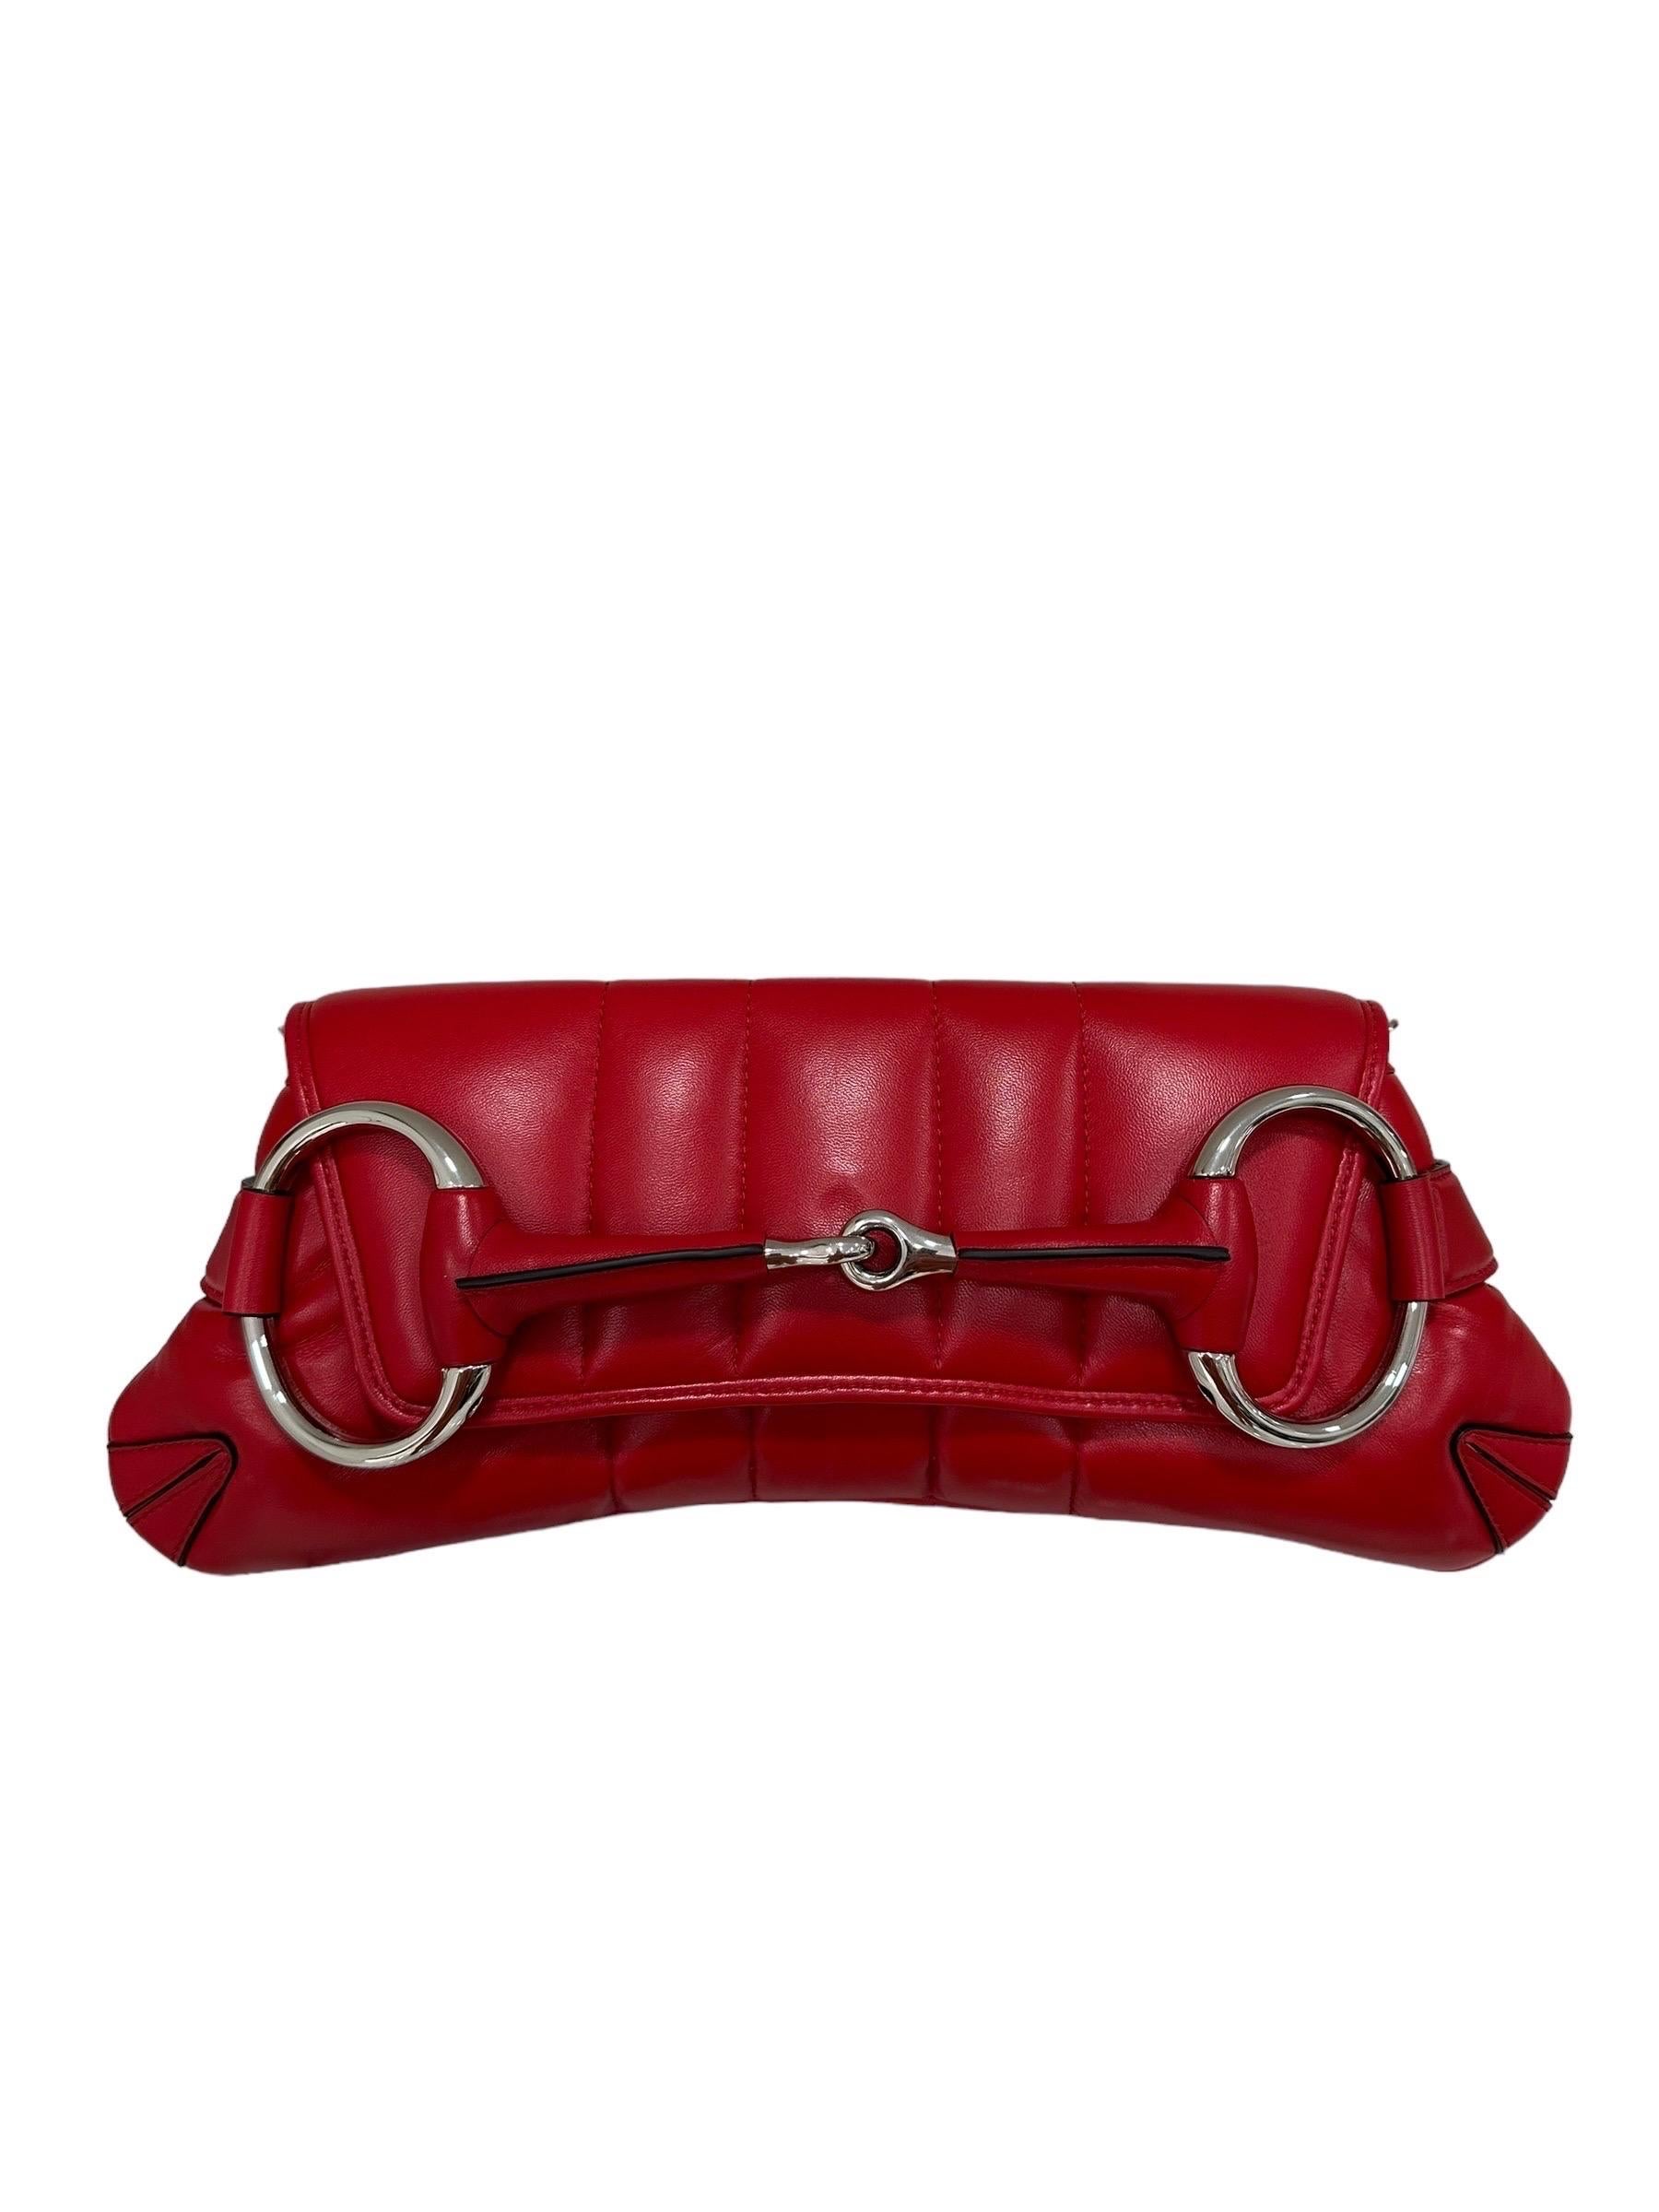 Borsa firmata Gucci, modello Horsebit Chain nella dimensione media, realizzata in pelle rossa con hardware argento. Munita di una doppia tracolla, una in pelle del medesimo colore della borsa, regolabile e removibile, e una formata da una catena